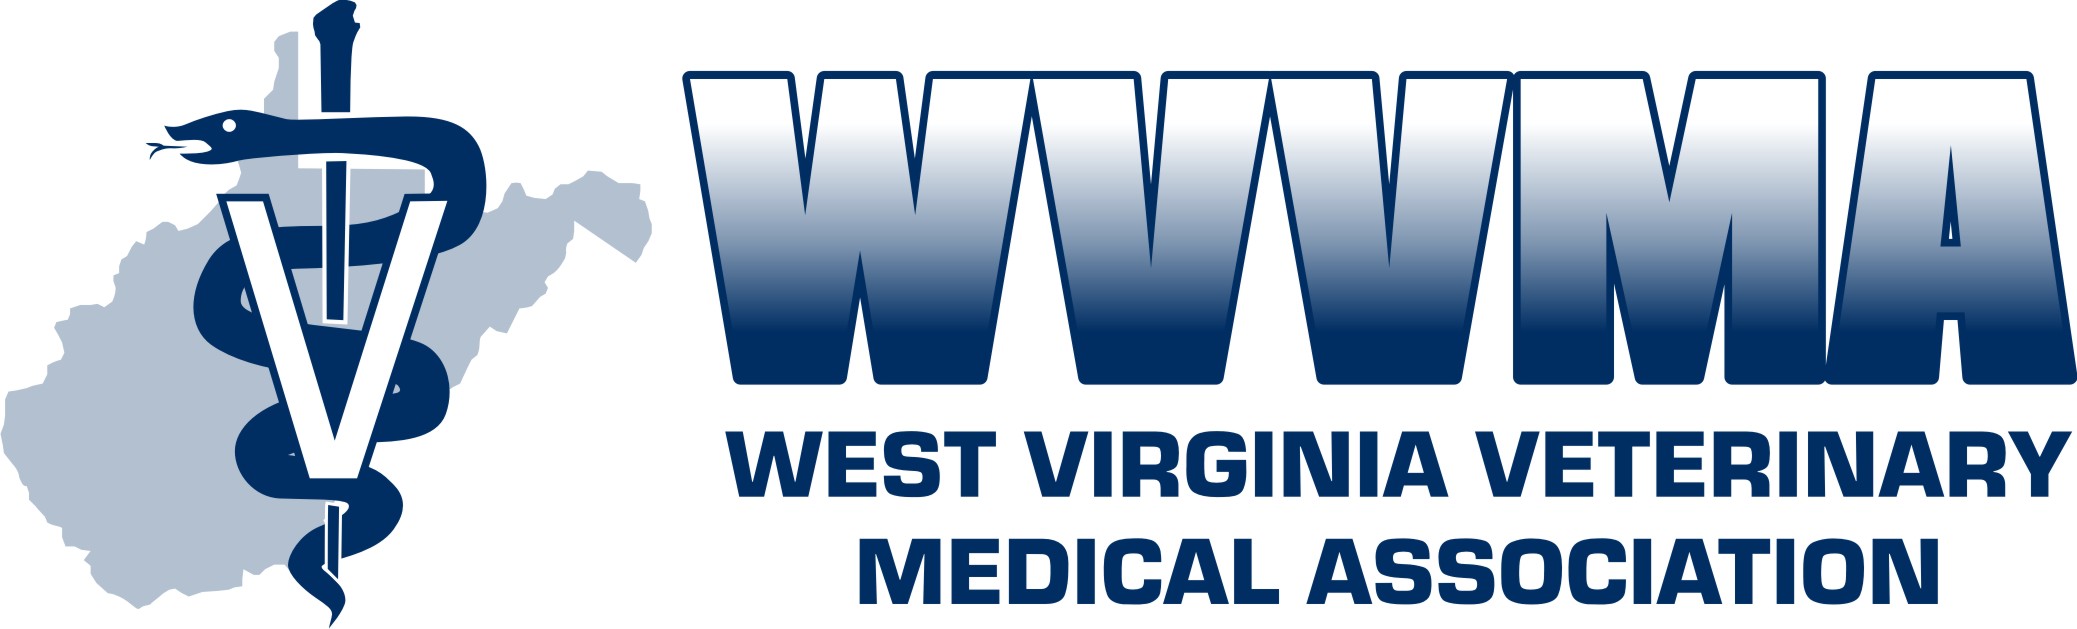 WVVMA Logo